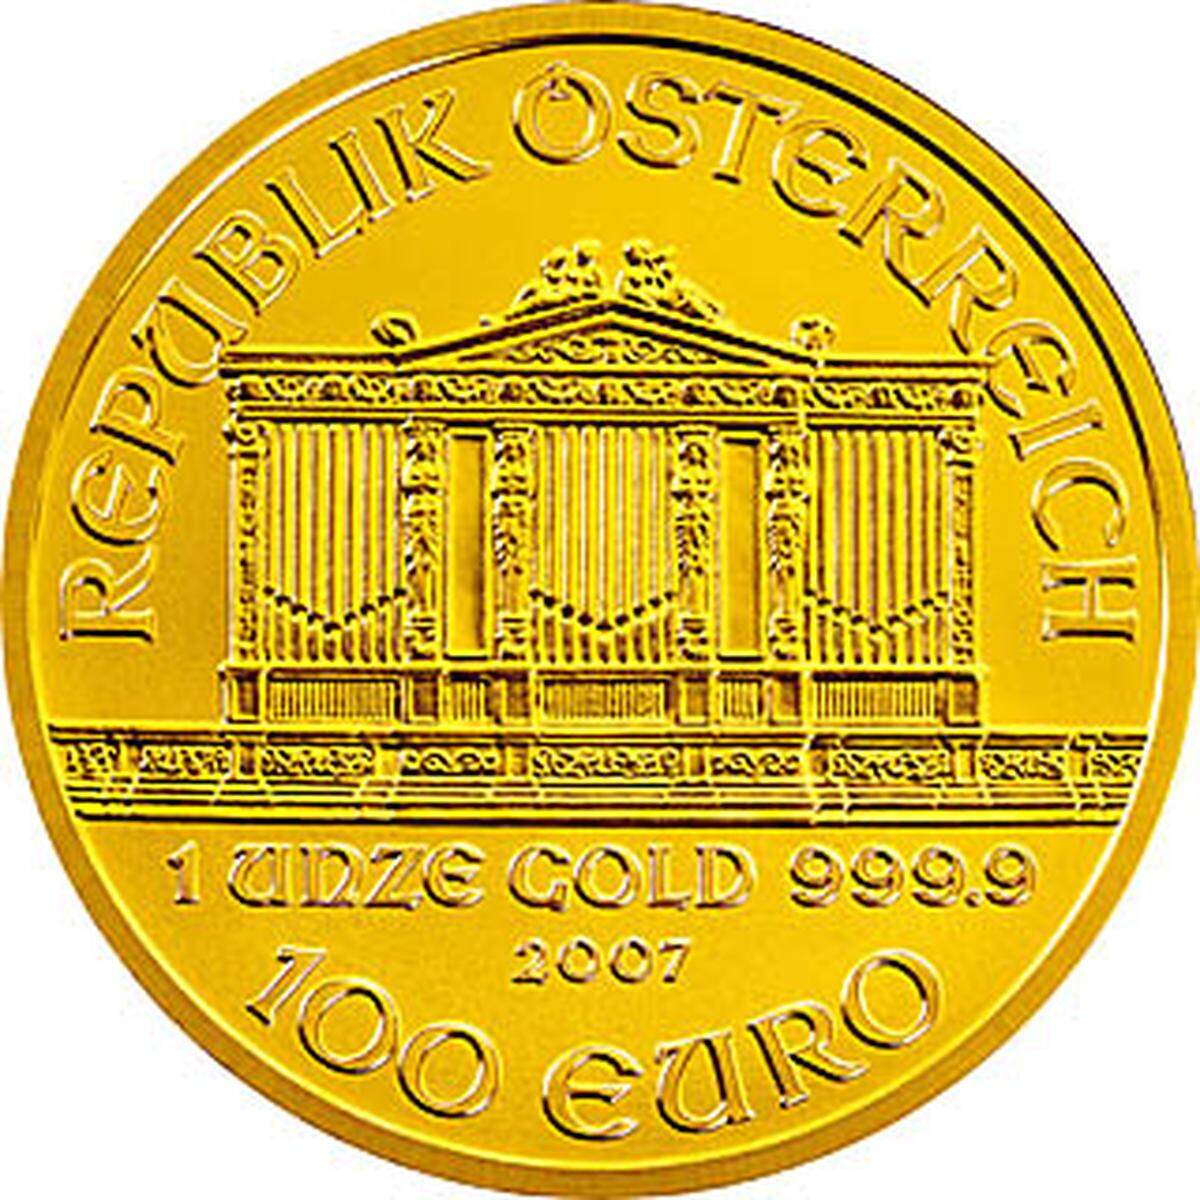 Aber auch aus Österreich kommt eine der berühmtesten Goldmünzen der Welt: Der Philharmoniker, das wohl klassische Firmungs/Konfirmations-Geschenk des Landes.